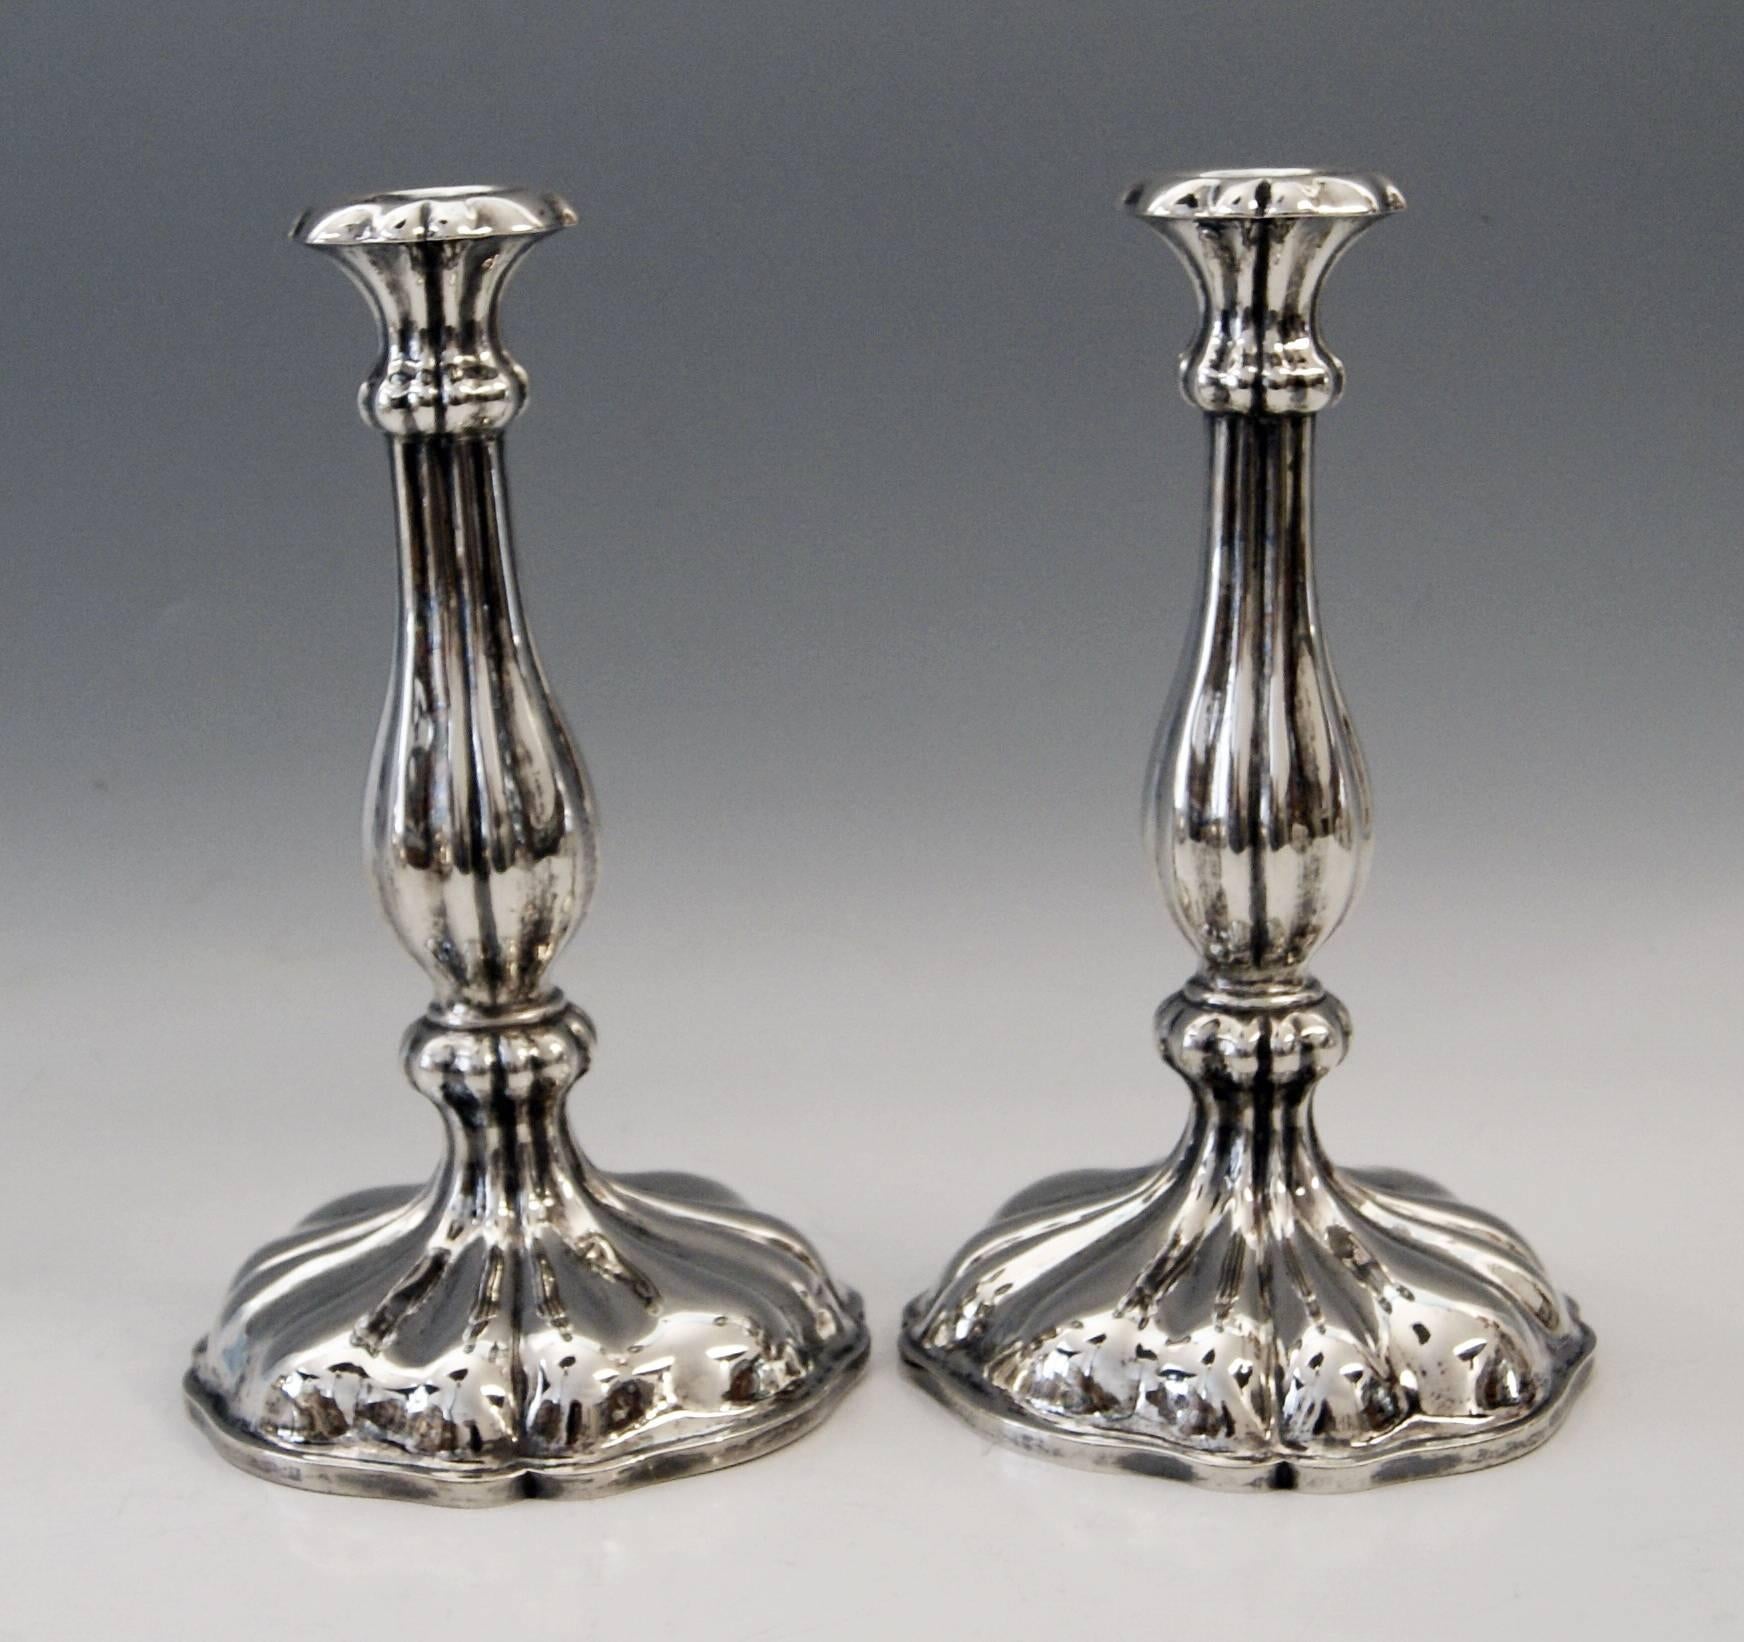 Hervorragendes österreichisches Biedermeier Silber Paar Kerzenhalter,
aus dem Jahr 1855.

Sehr interessantes Paar Wiener Silberleuchter von hervorragender Verarbeitungsqualität und elegantem Aussehen.
Diese Leuchter wurden in der Wiener